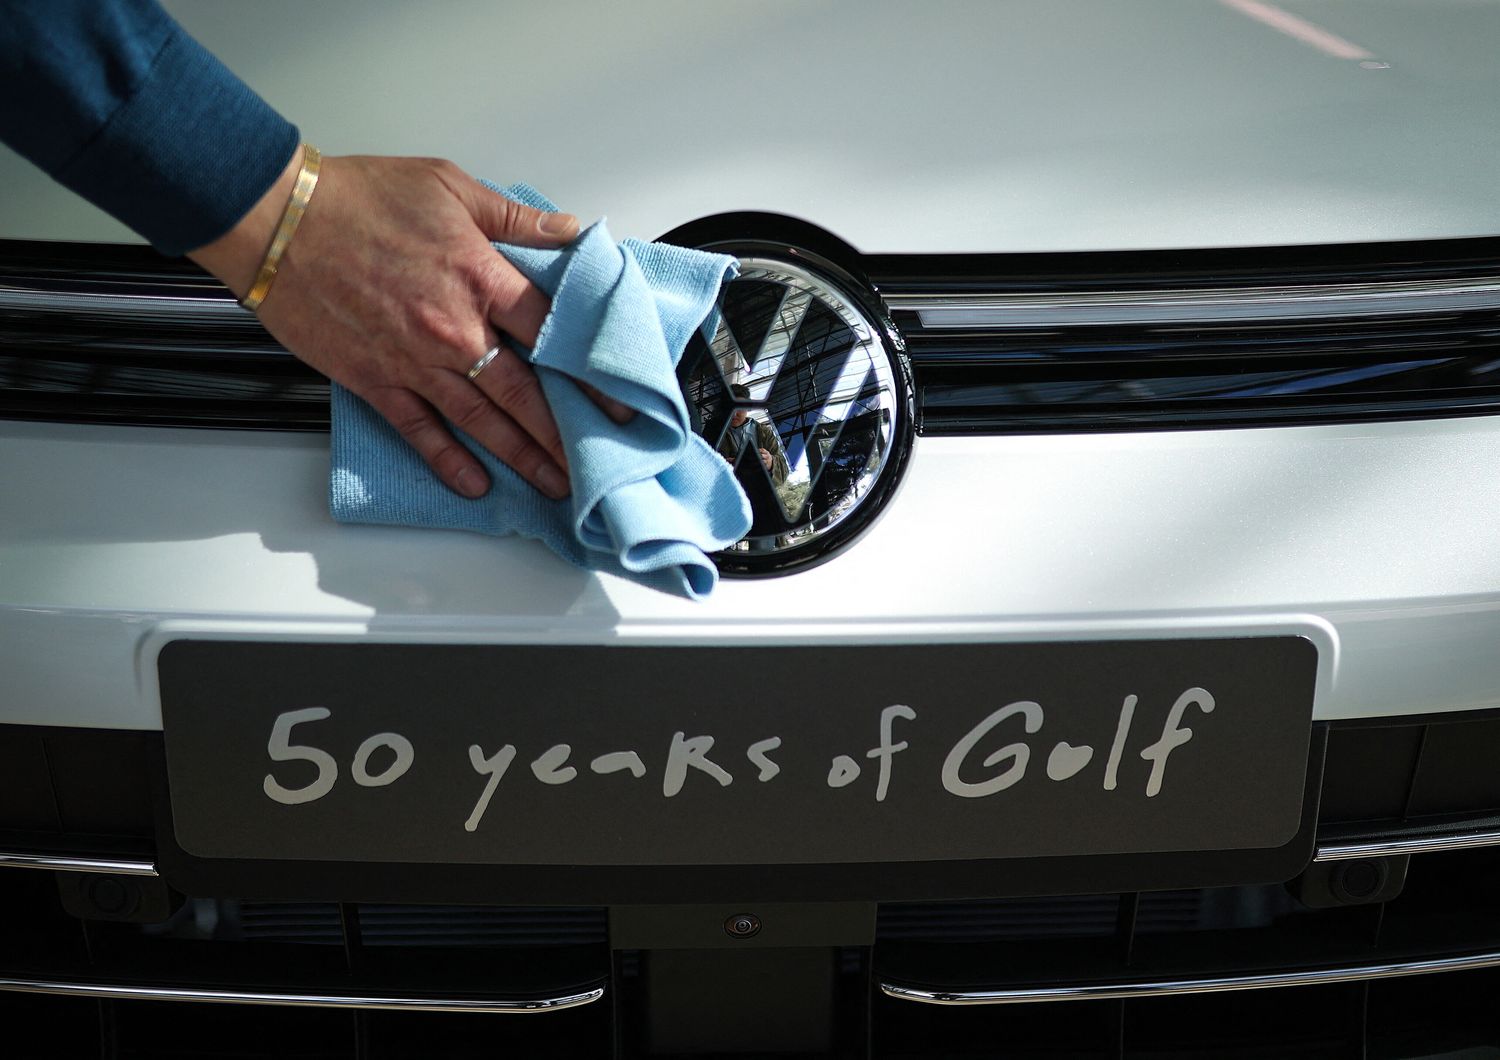 50 anni volkswagen golf